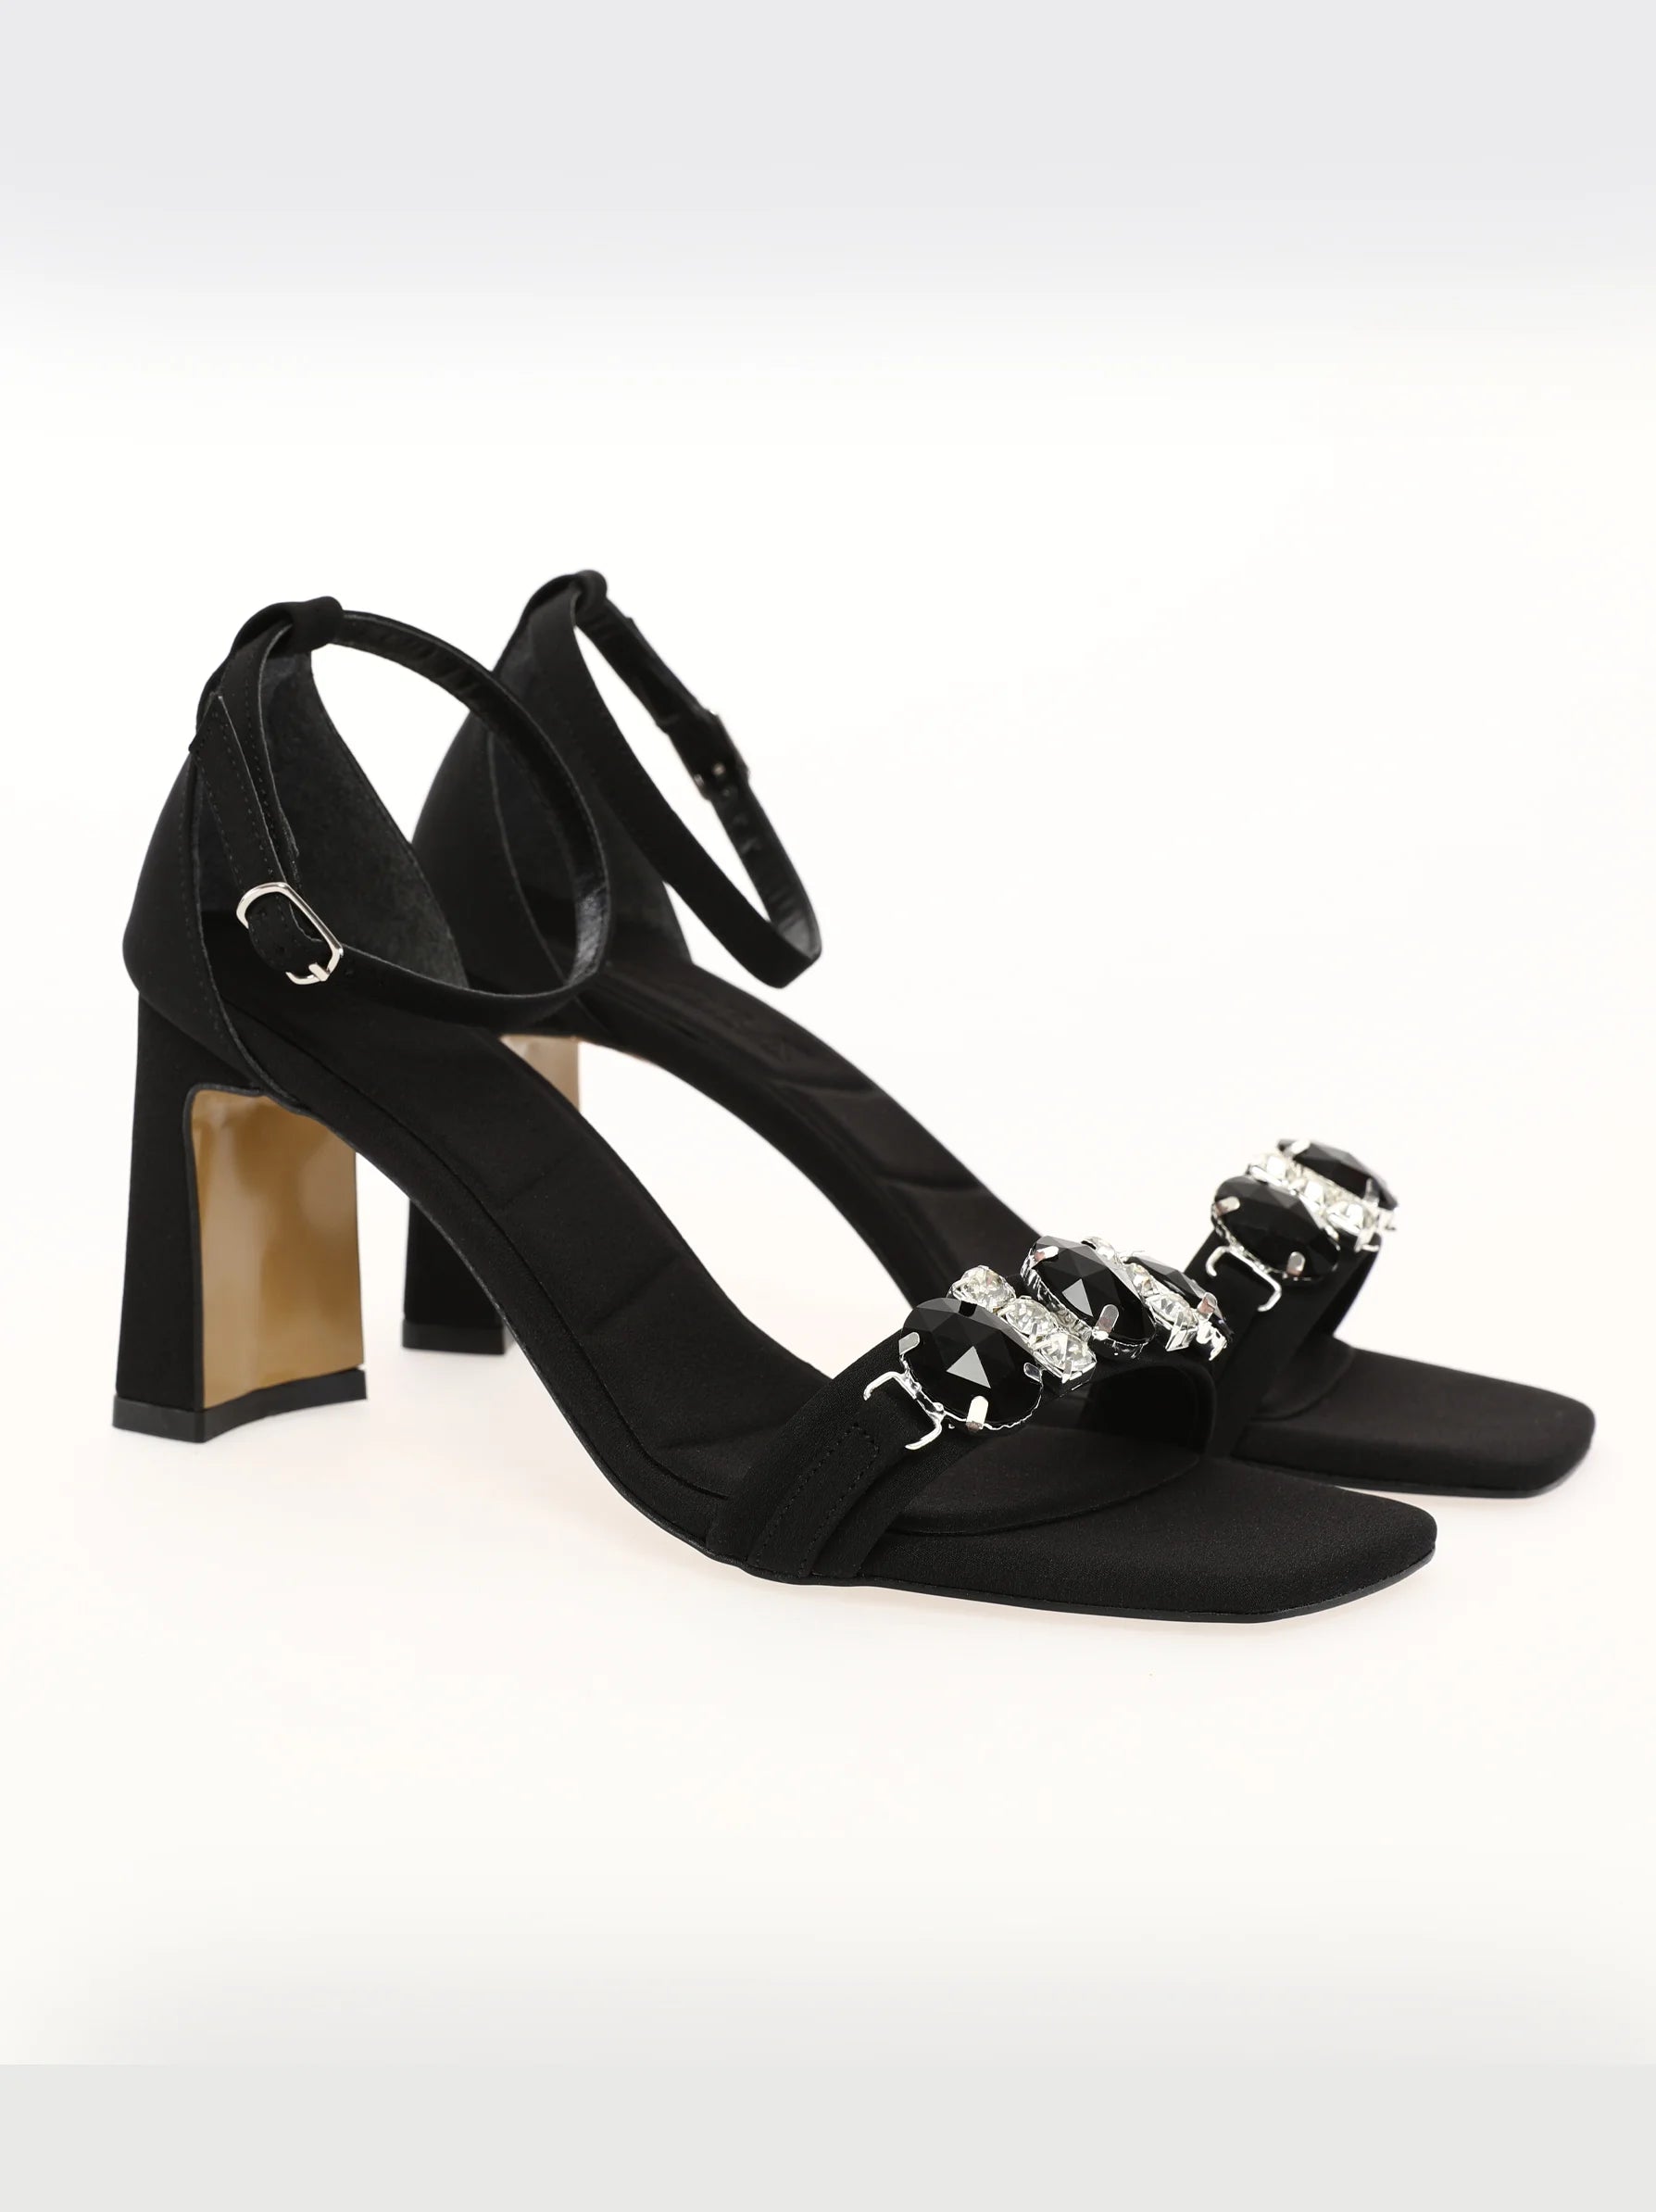 Pumps with low block heels - black | Large Size | Pumps | Stravers Shoes